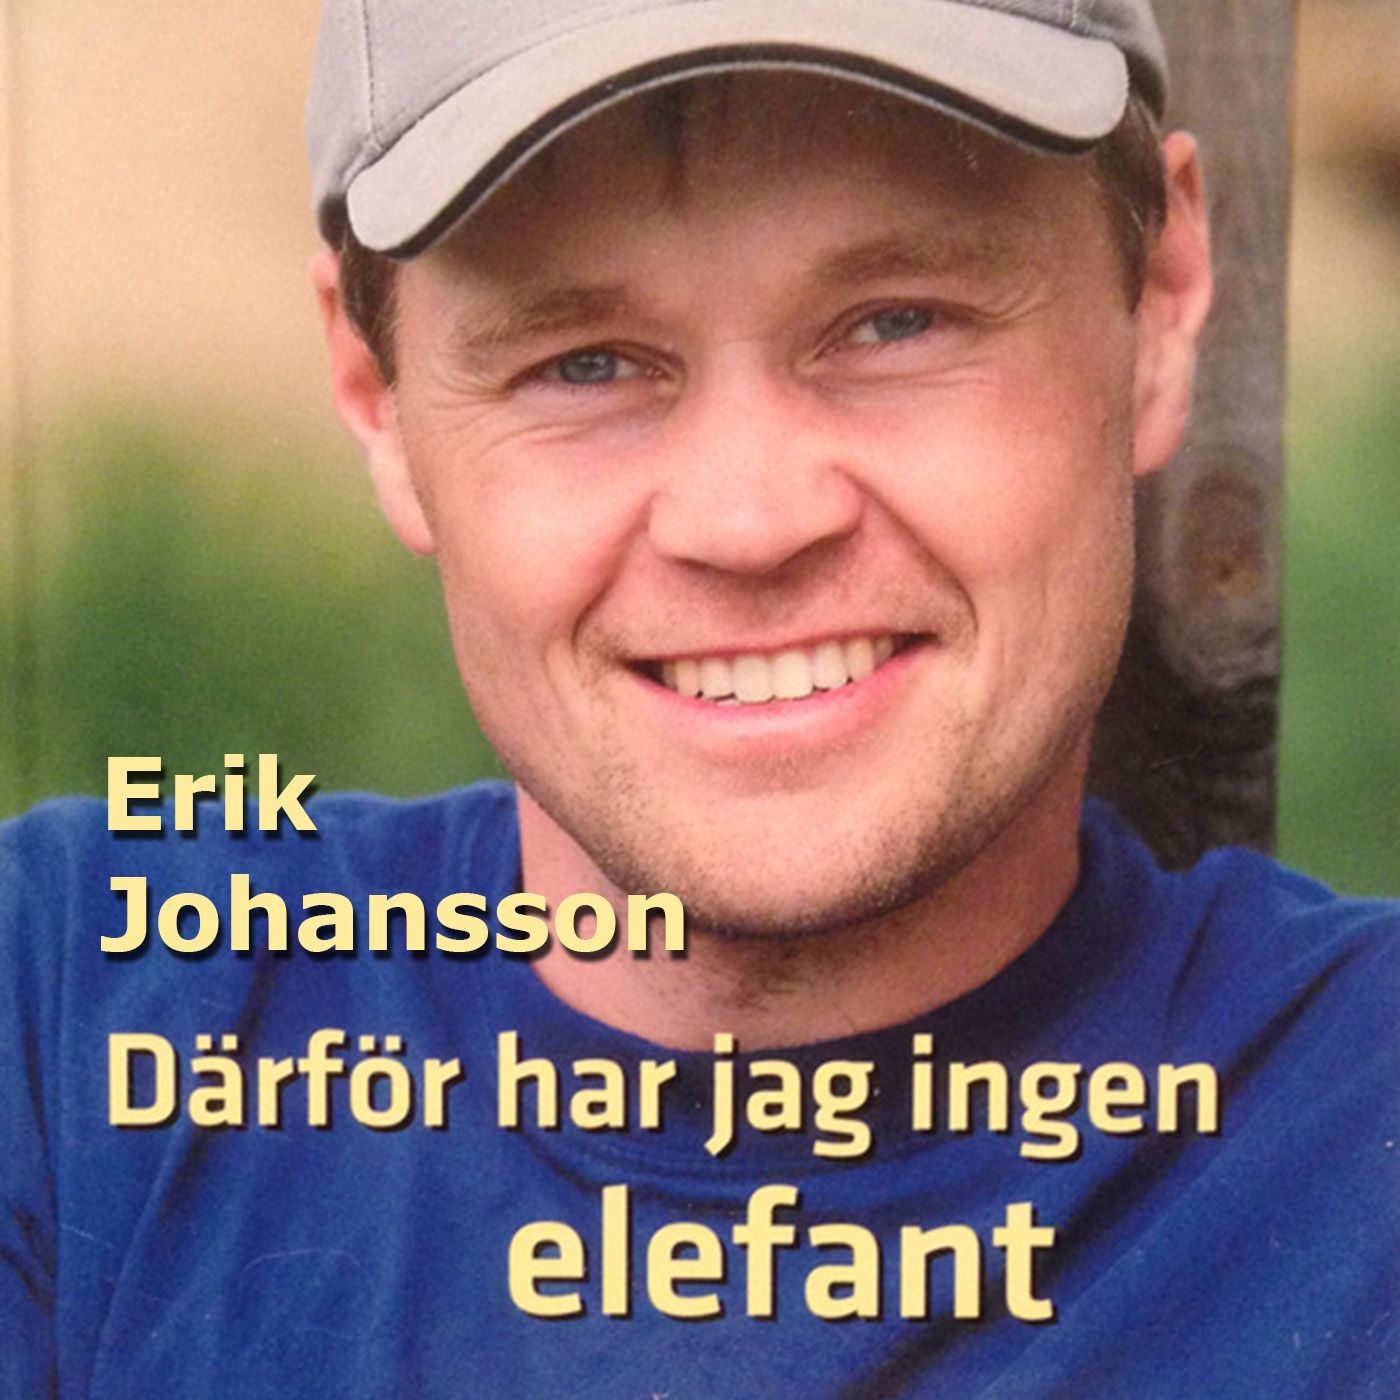 Därför har jag ingen elefant, lydbog af Erik Johansson